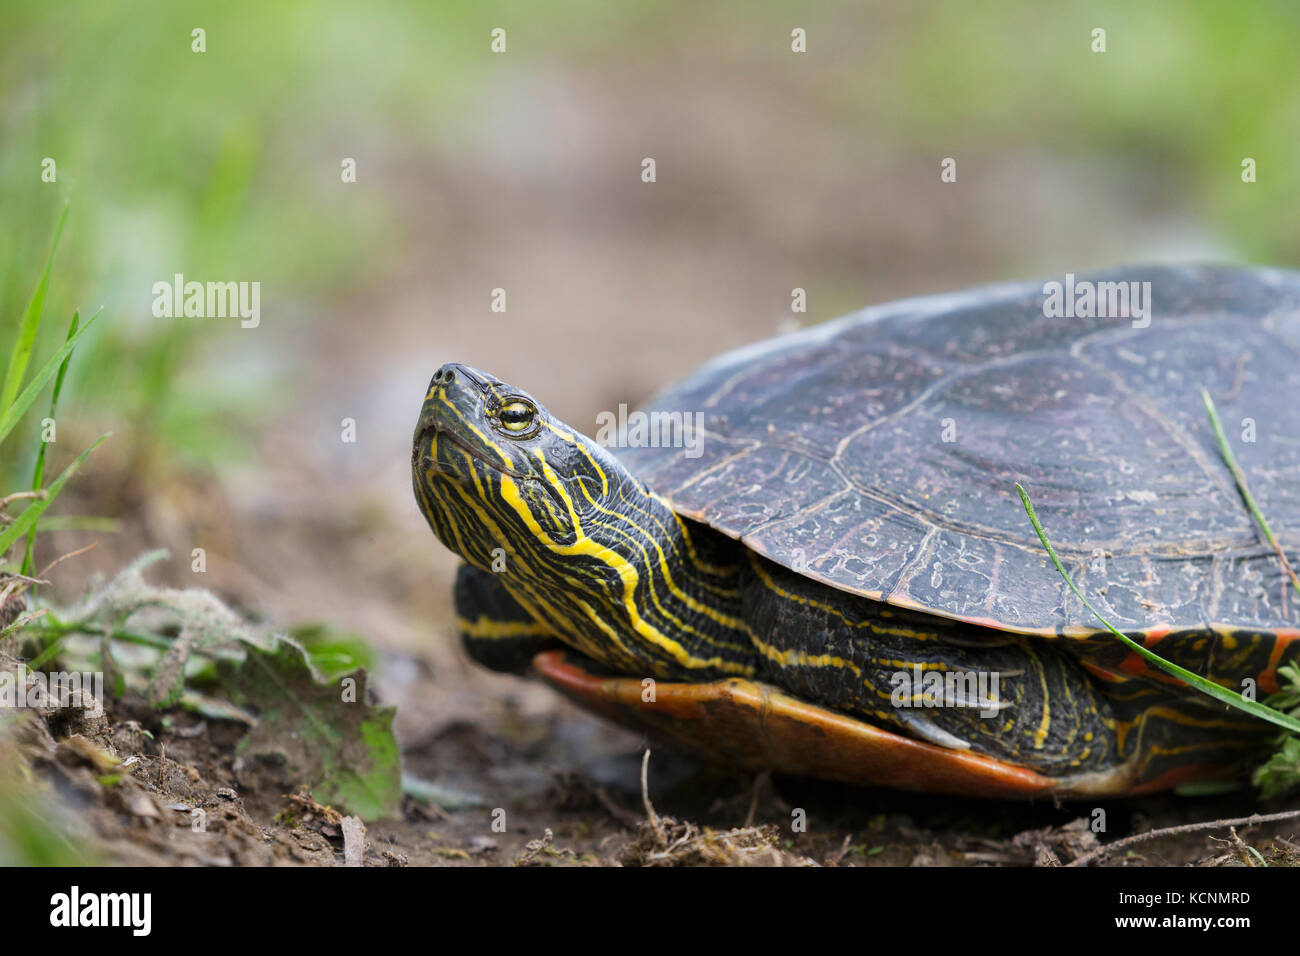 Western tortuga pintada (Chrysemys picta bellii), hembra, Nicomen Slough, Agassiz, British Columbia, Canadá. La costa del Pacífico de la población de esta especie está en peligro en Canadá. Foto de stock